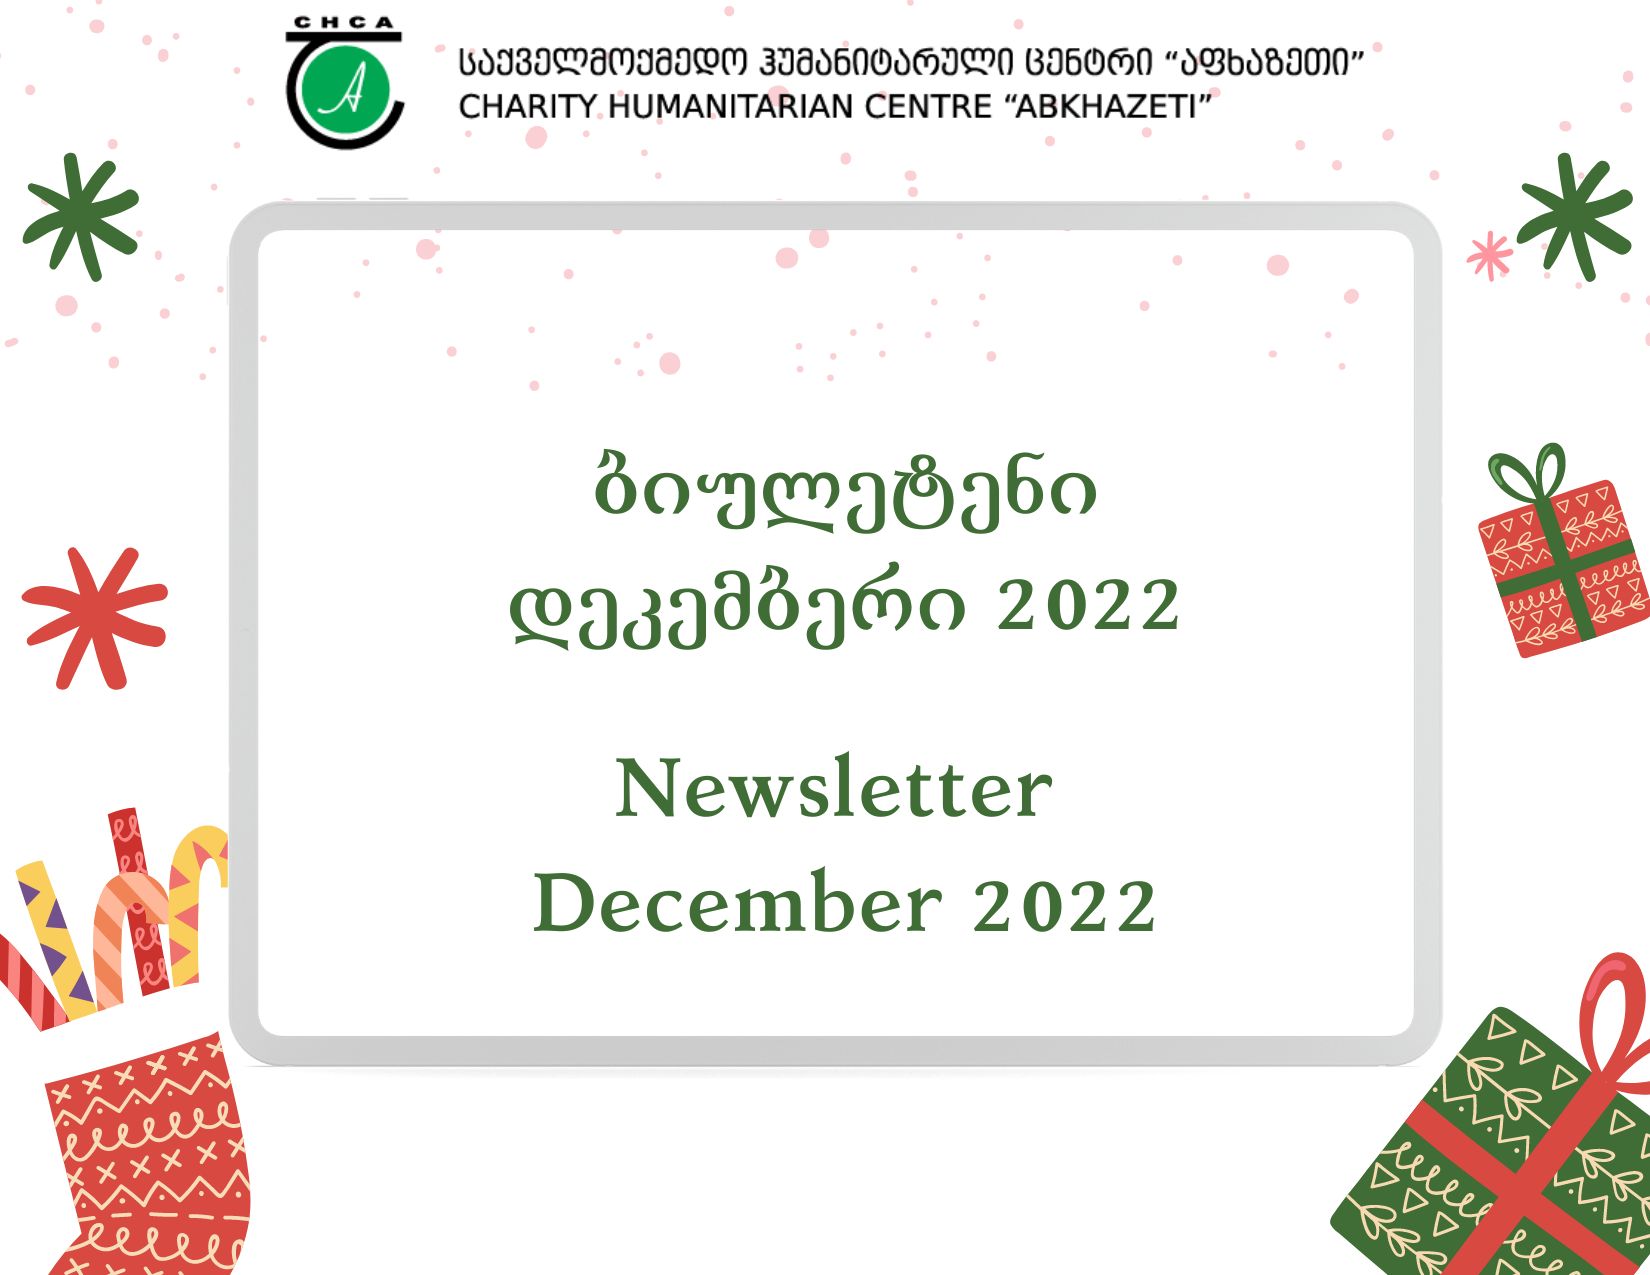 Newsletter - December 2022